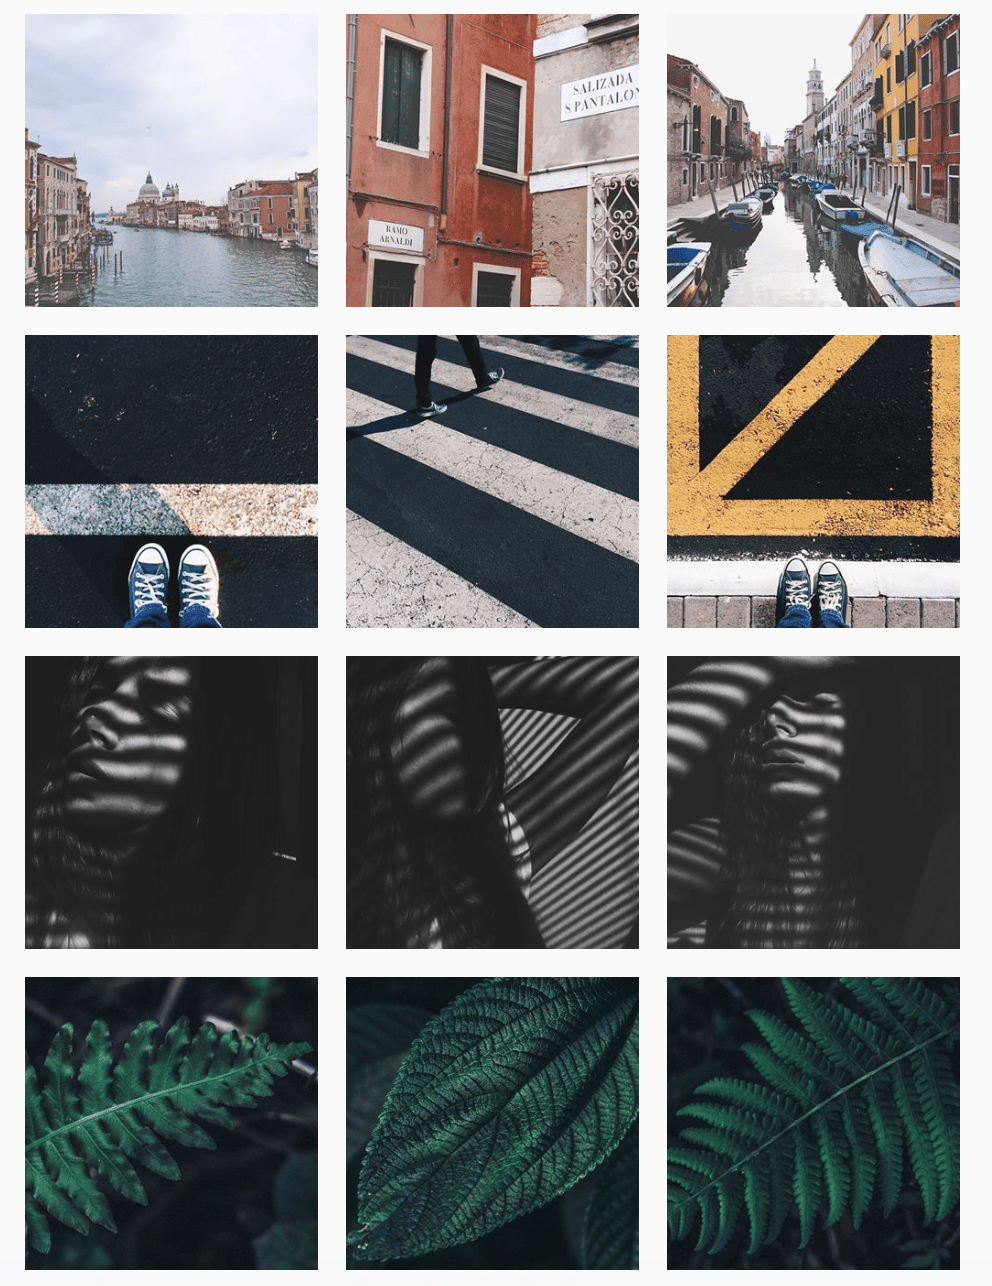 como organizar o feed instagram feed em blocos de 3 fotos